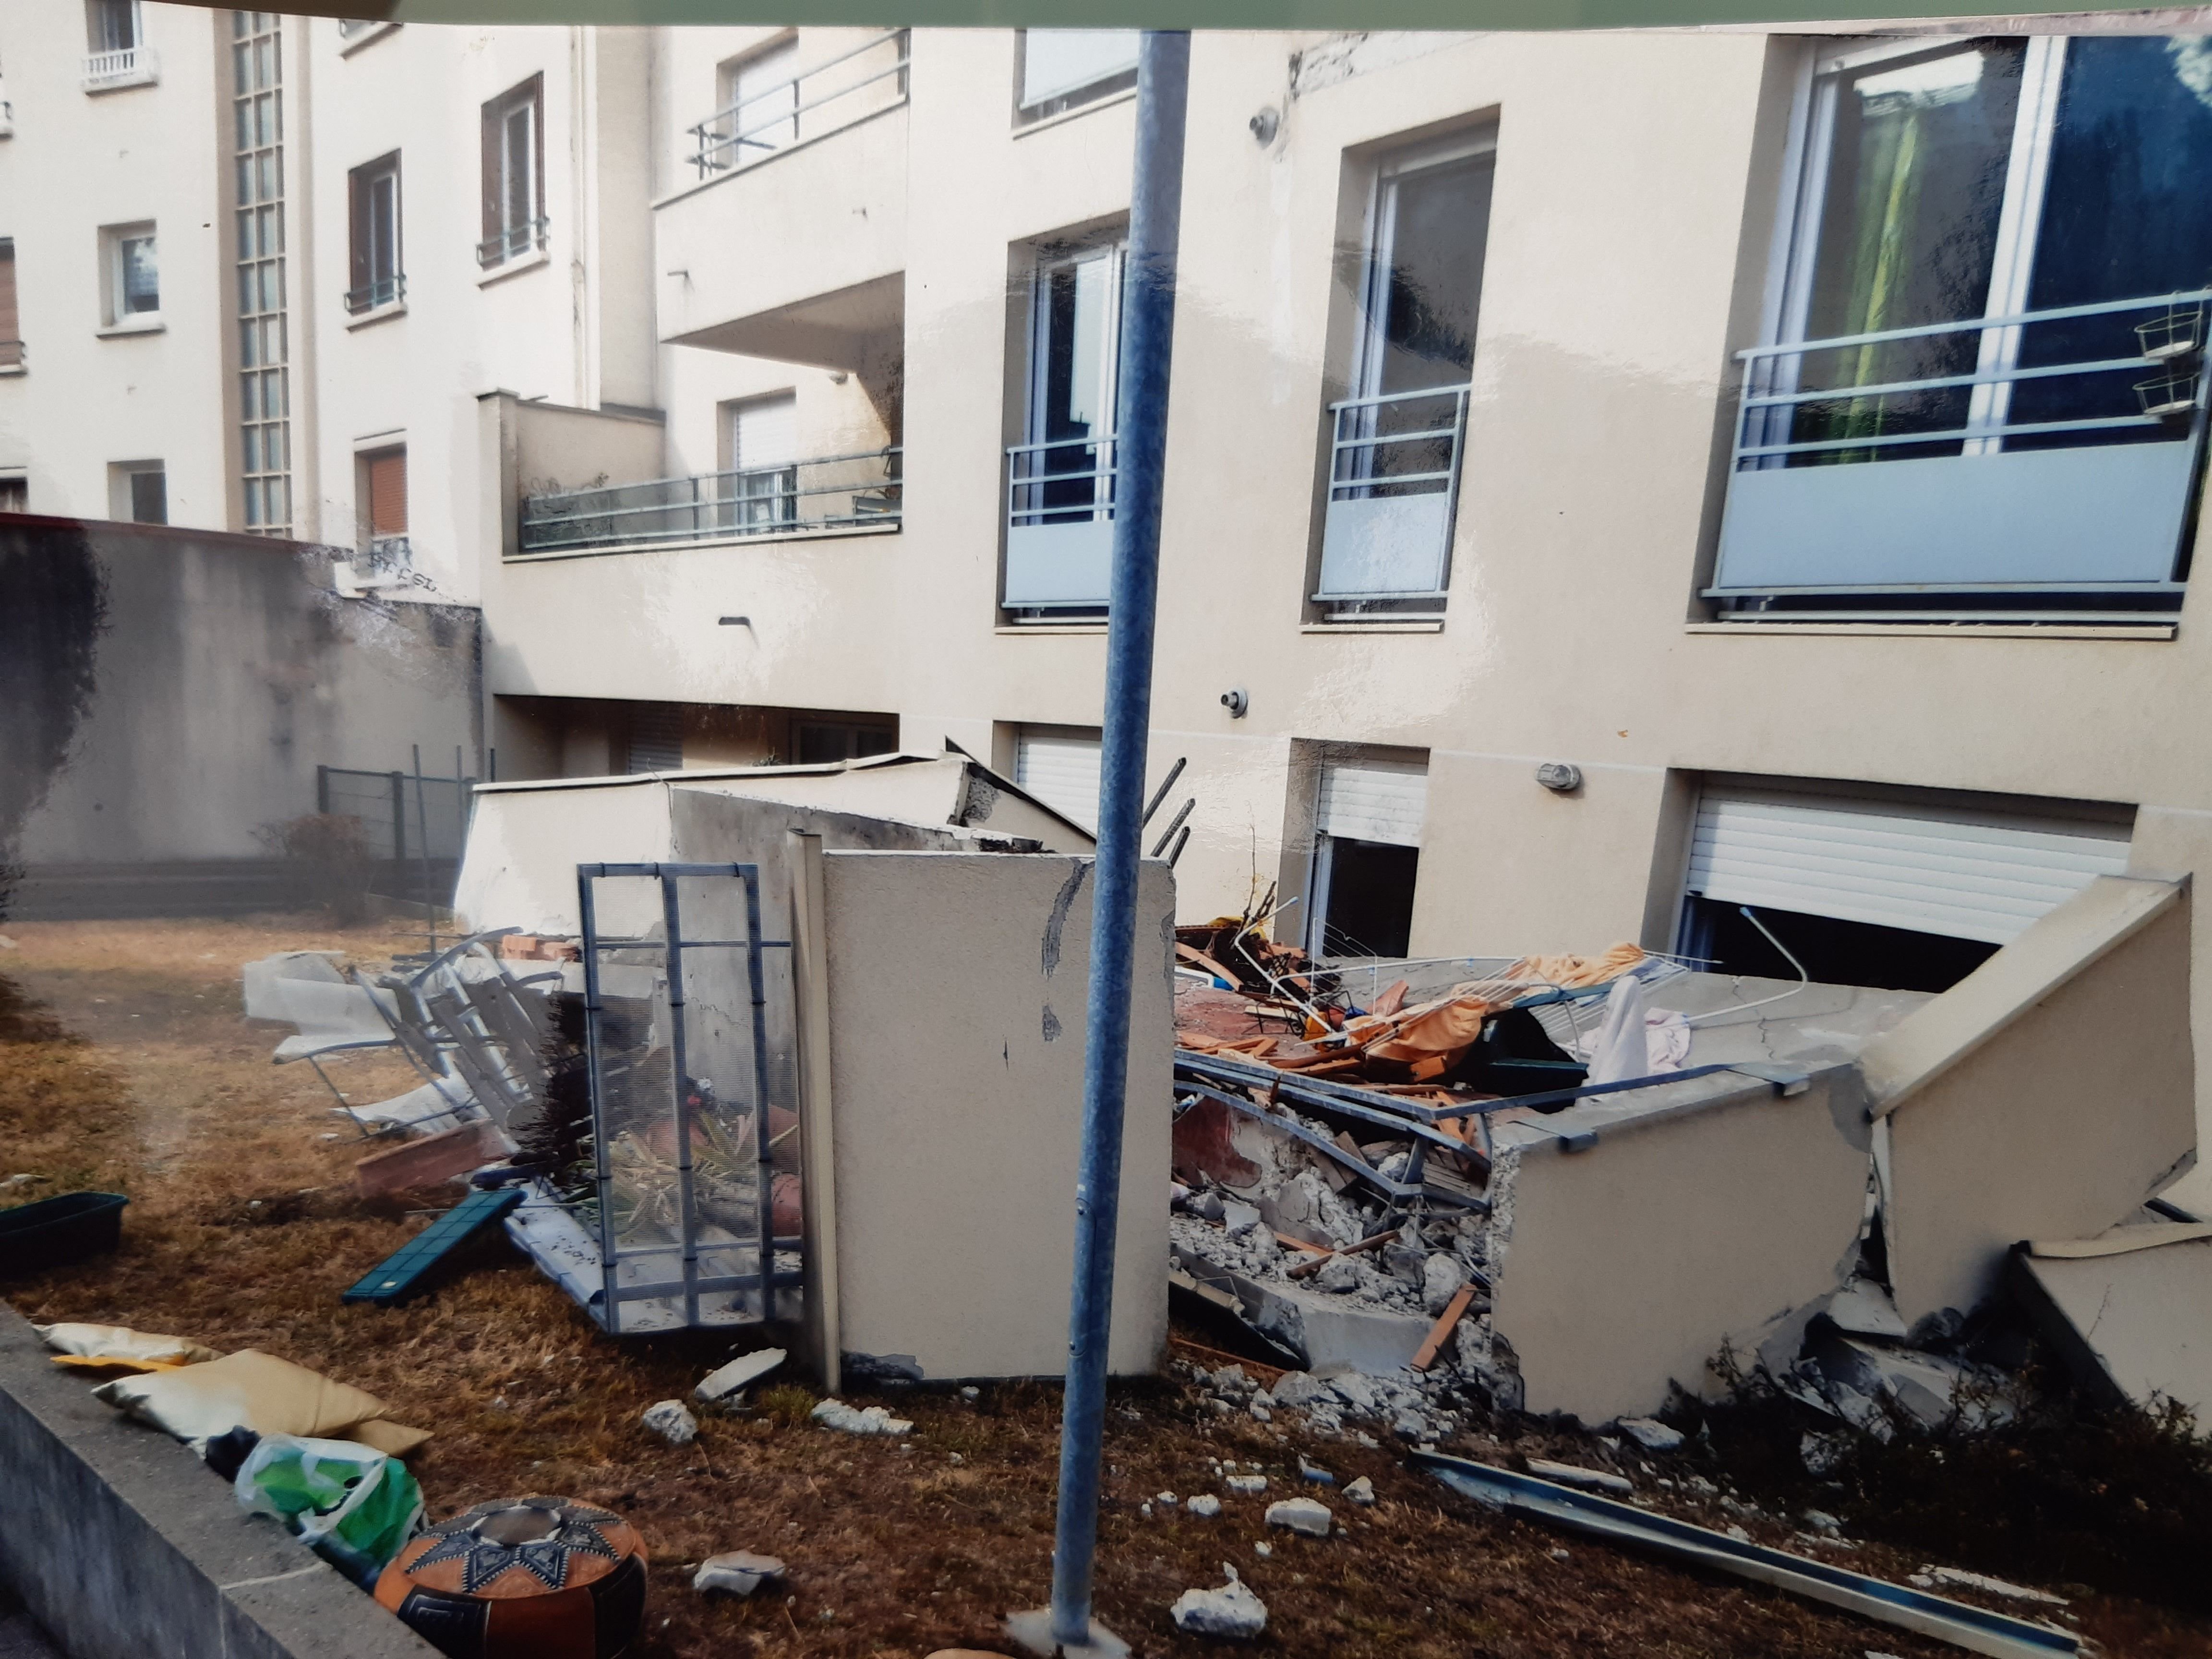 Montrouge (Hauts-de-Seine), septembre 2012. Le balcon du sixième étage était tombé, entraînant quatre autres balcons dans sa chute, dans la cour arrière du bâtiment situé au 101, rue Gabriel-Péri. Par miracle, personne n'avait été blessé. DR